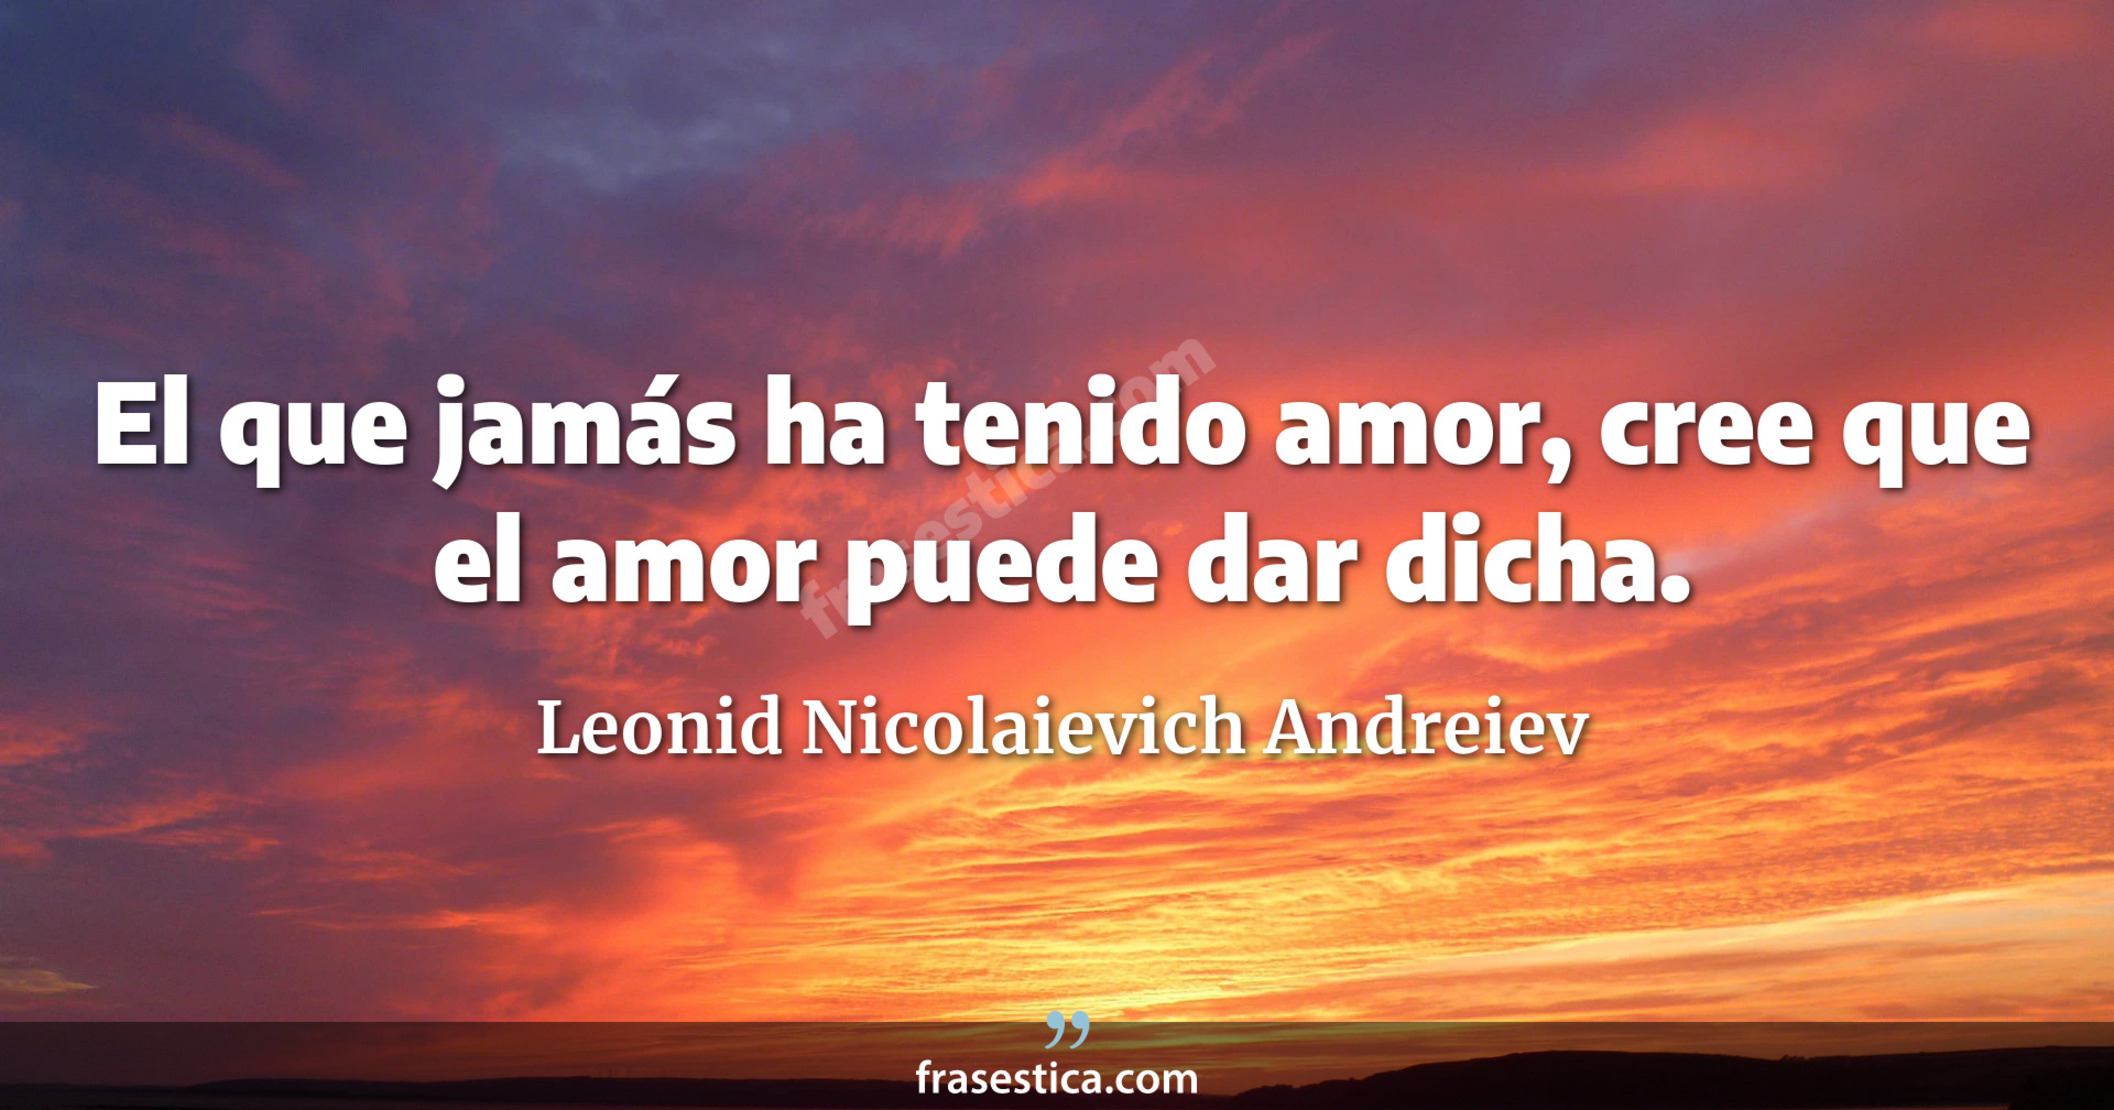 El que jamás ha tenido amor, cree que el amor puede dar dicha. - Leonid Nicolaievich Andreiev